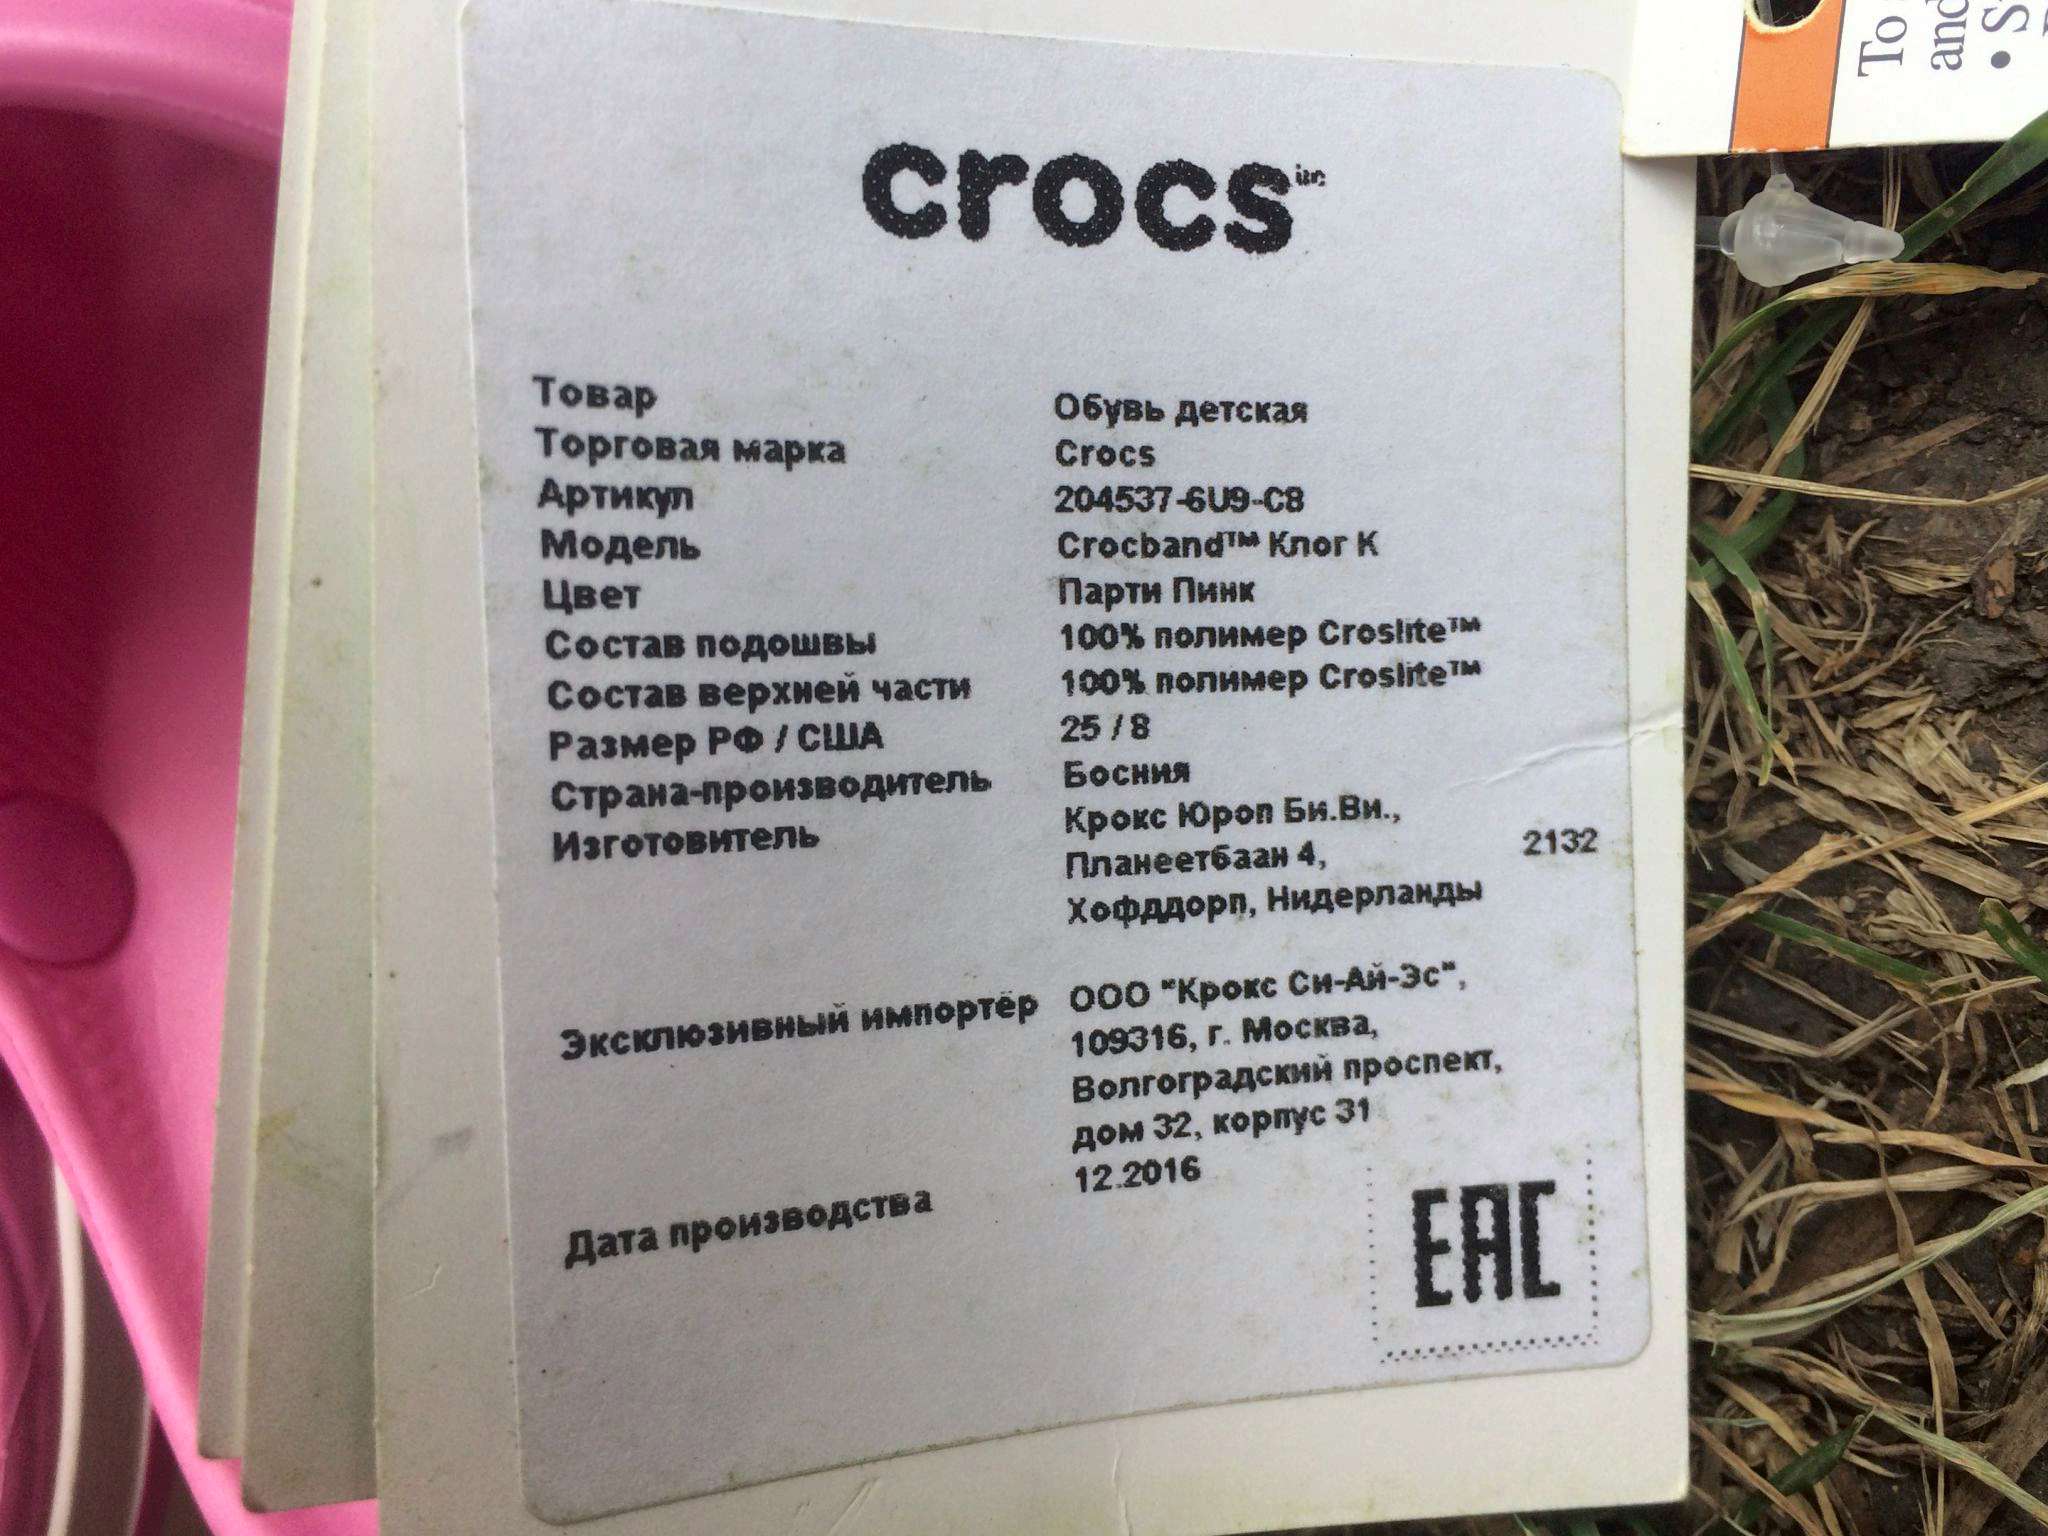 Штрих код кроксов. Crocs 204537-6u9-j1. Crocs этикетка. Бирка крокс. Crocs бирка оригинальная.